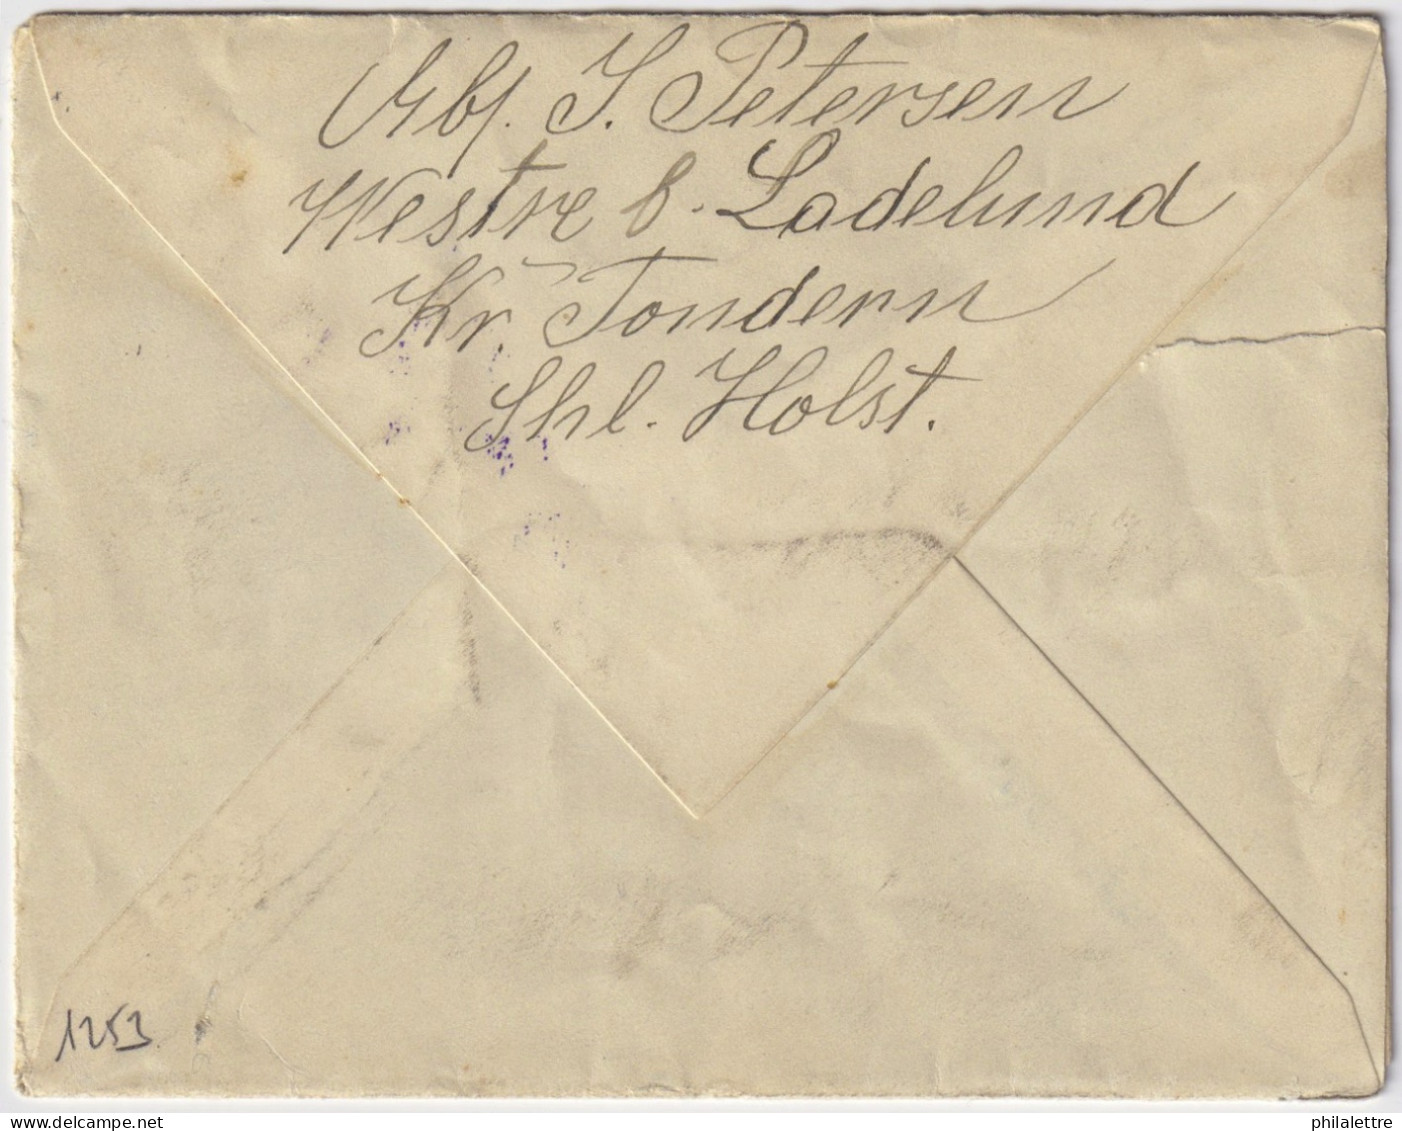 ALLEMAGNE / GERMANY - 1917 Feldpost Letter From LECK To A Soldier - Returned To Sender "ZURÜCK, GEFALLEN" (deceased) - Briefe U. Dokumente